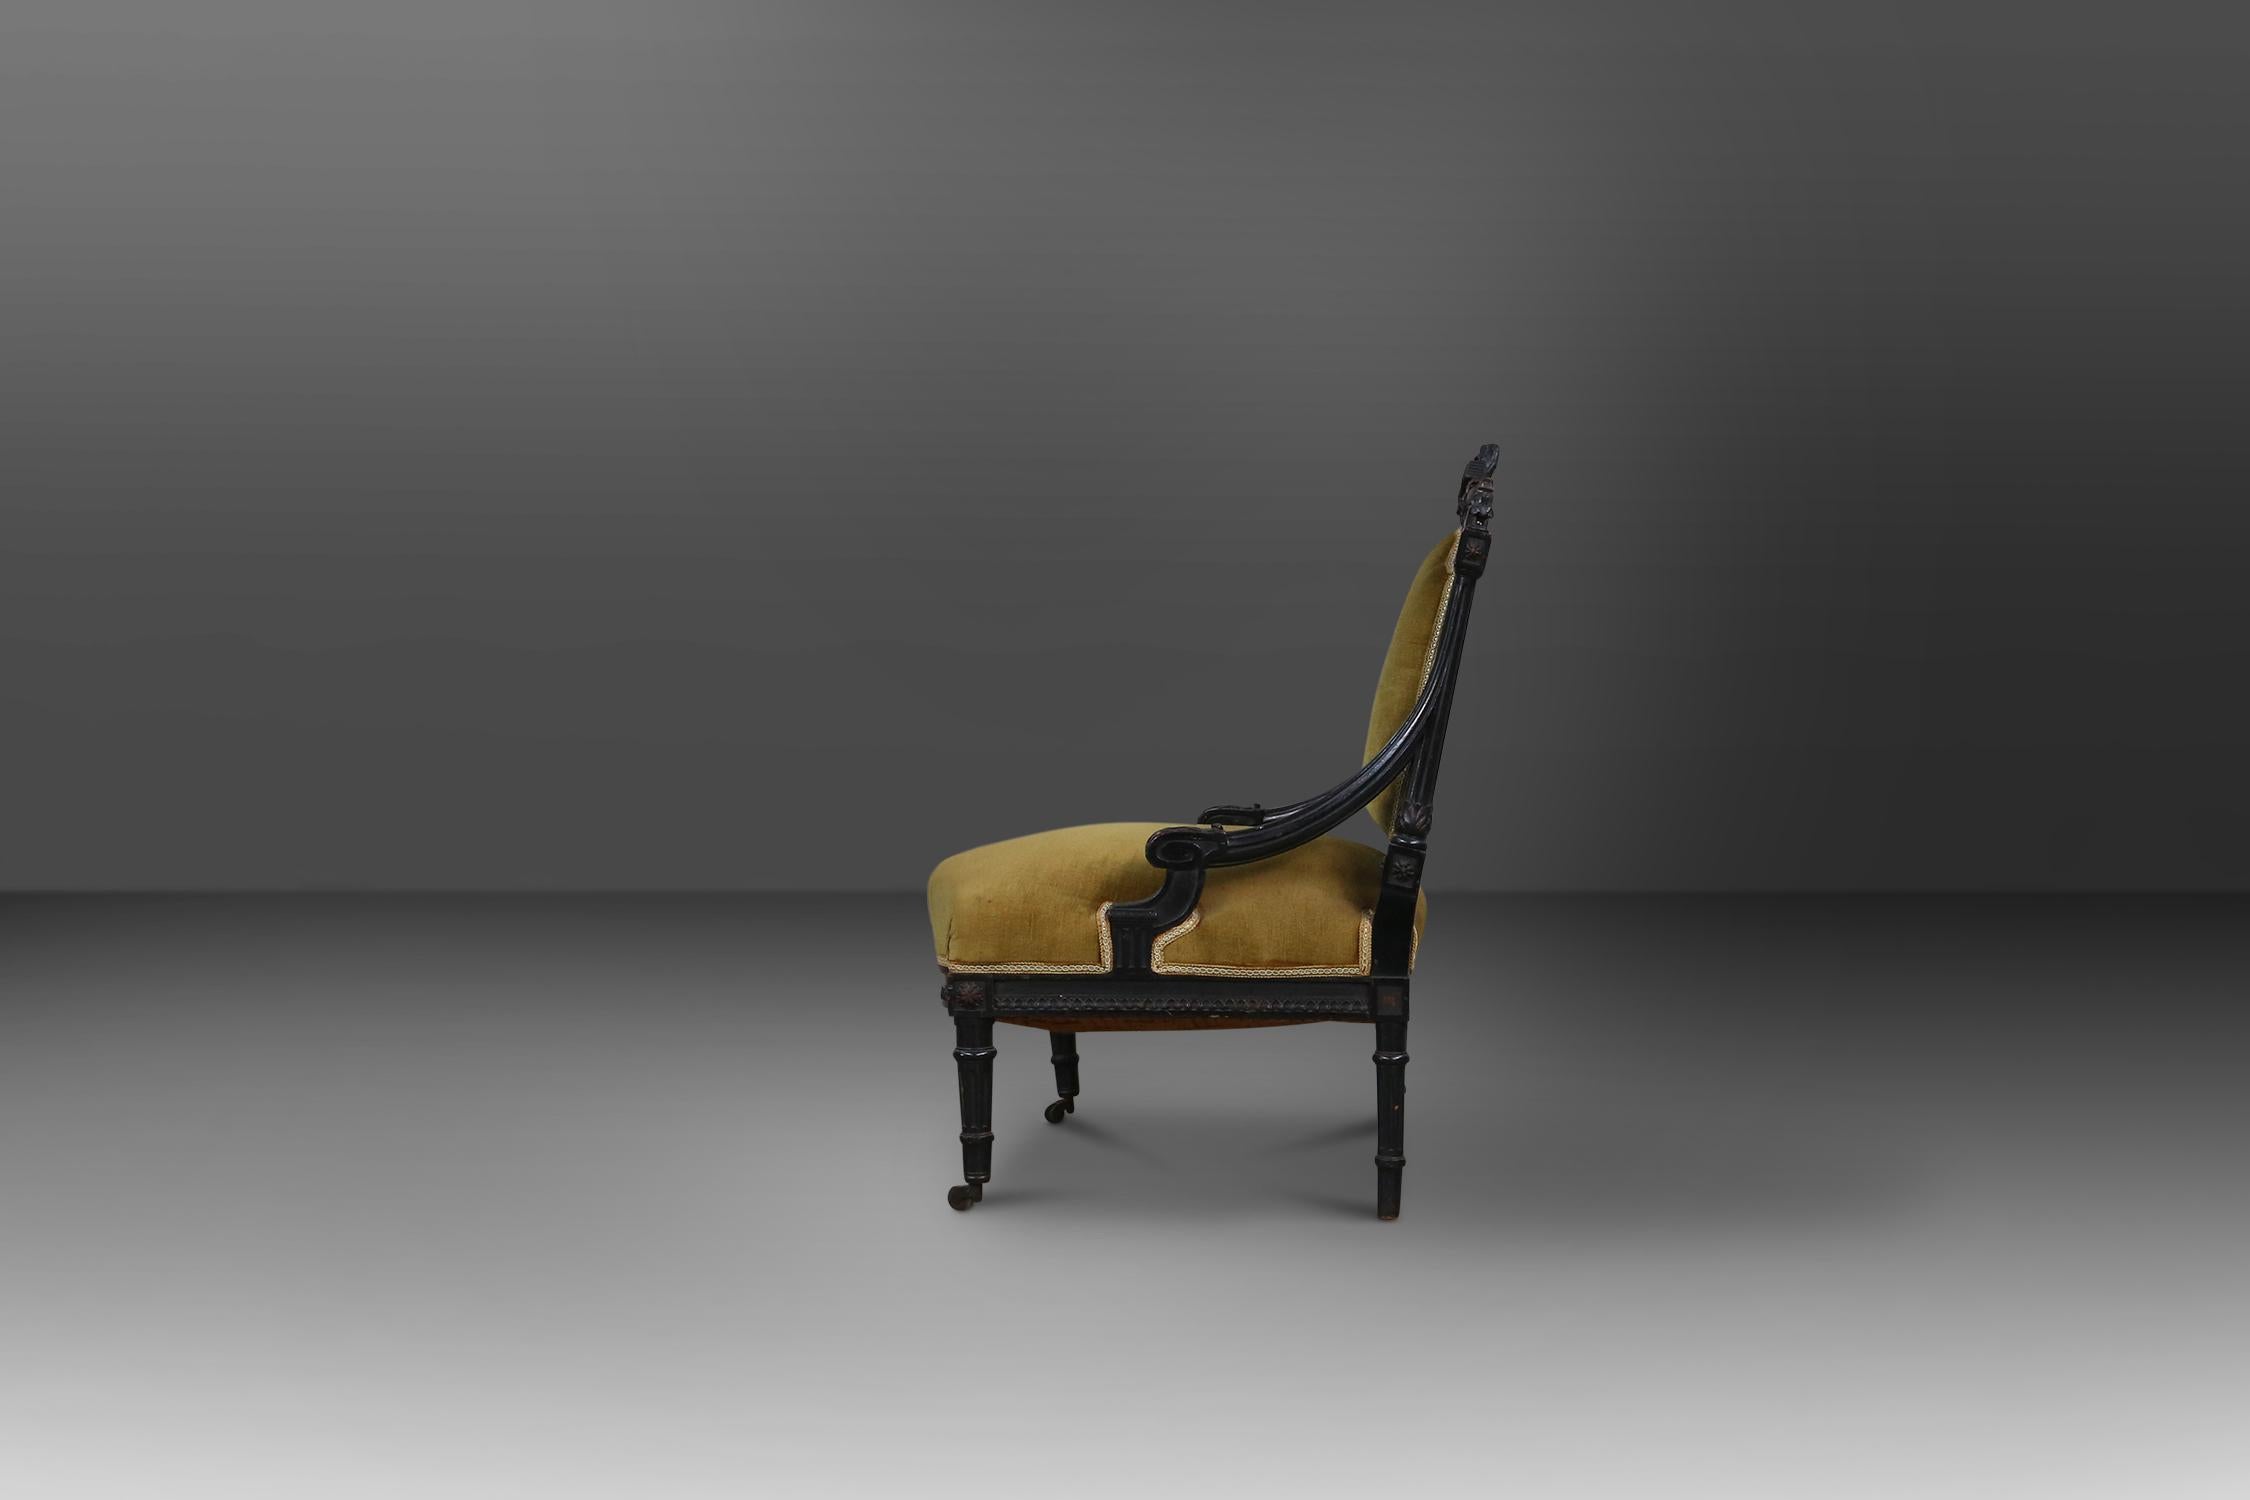 Sessel im Empire-Stil um 1850 aus schwarzem Holz und grün-gelbem Samt.
Hat einige schöne skulpturale Details in das Holz geschnitzt. Lässt sich auf den Vorderrädern leicht bewegen.